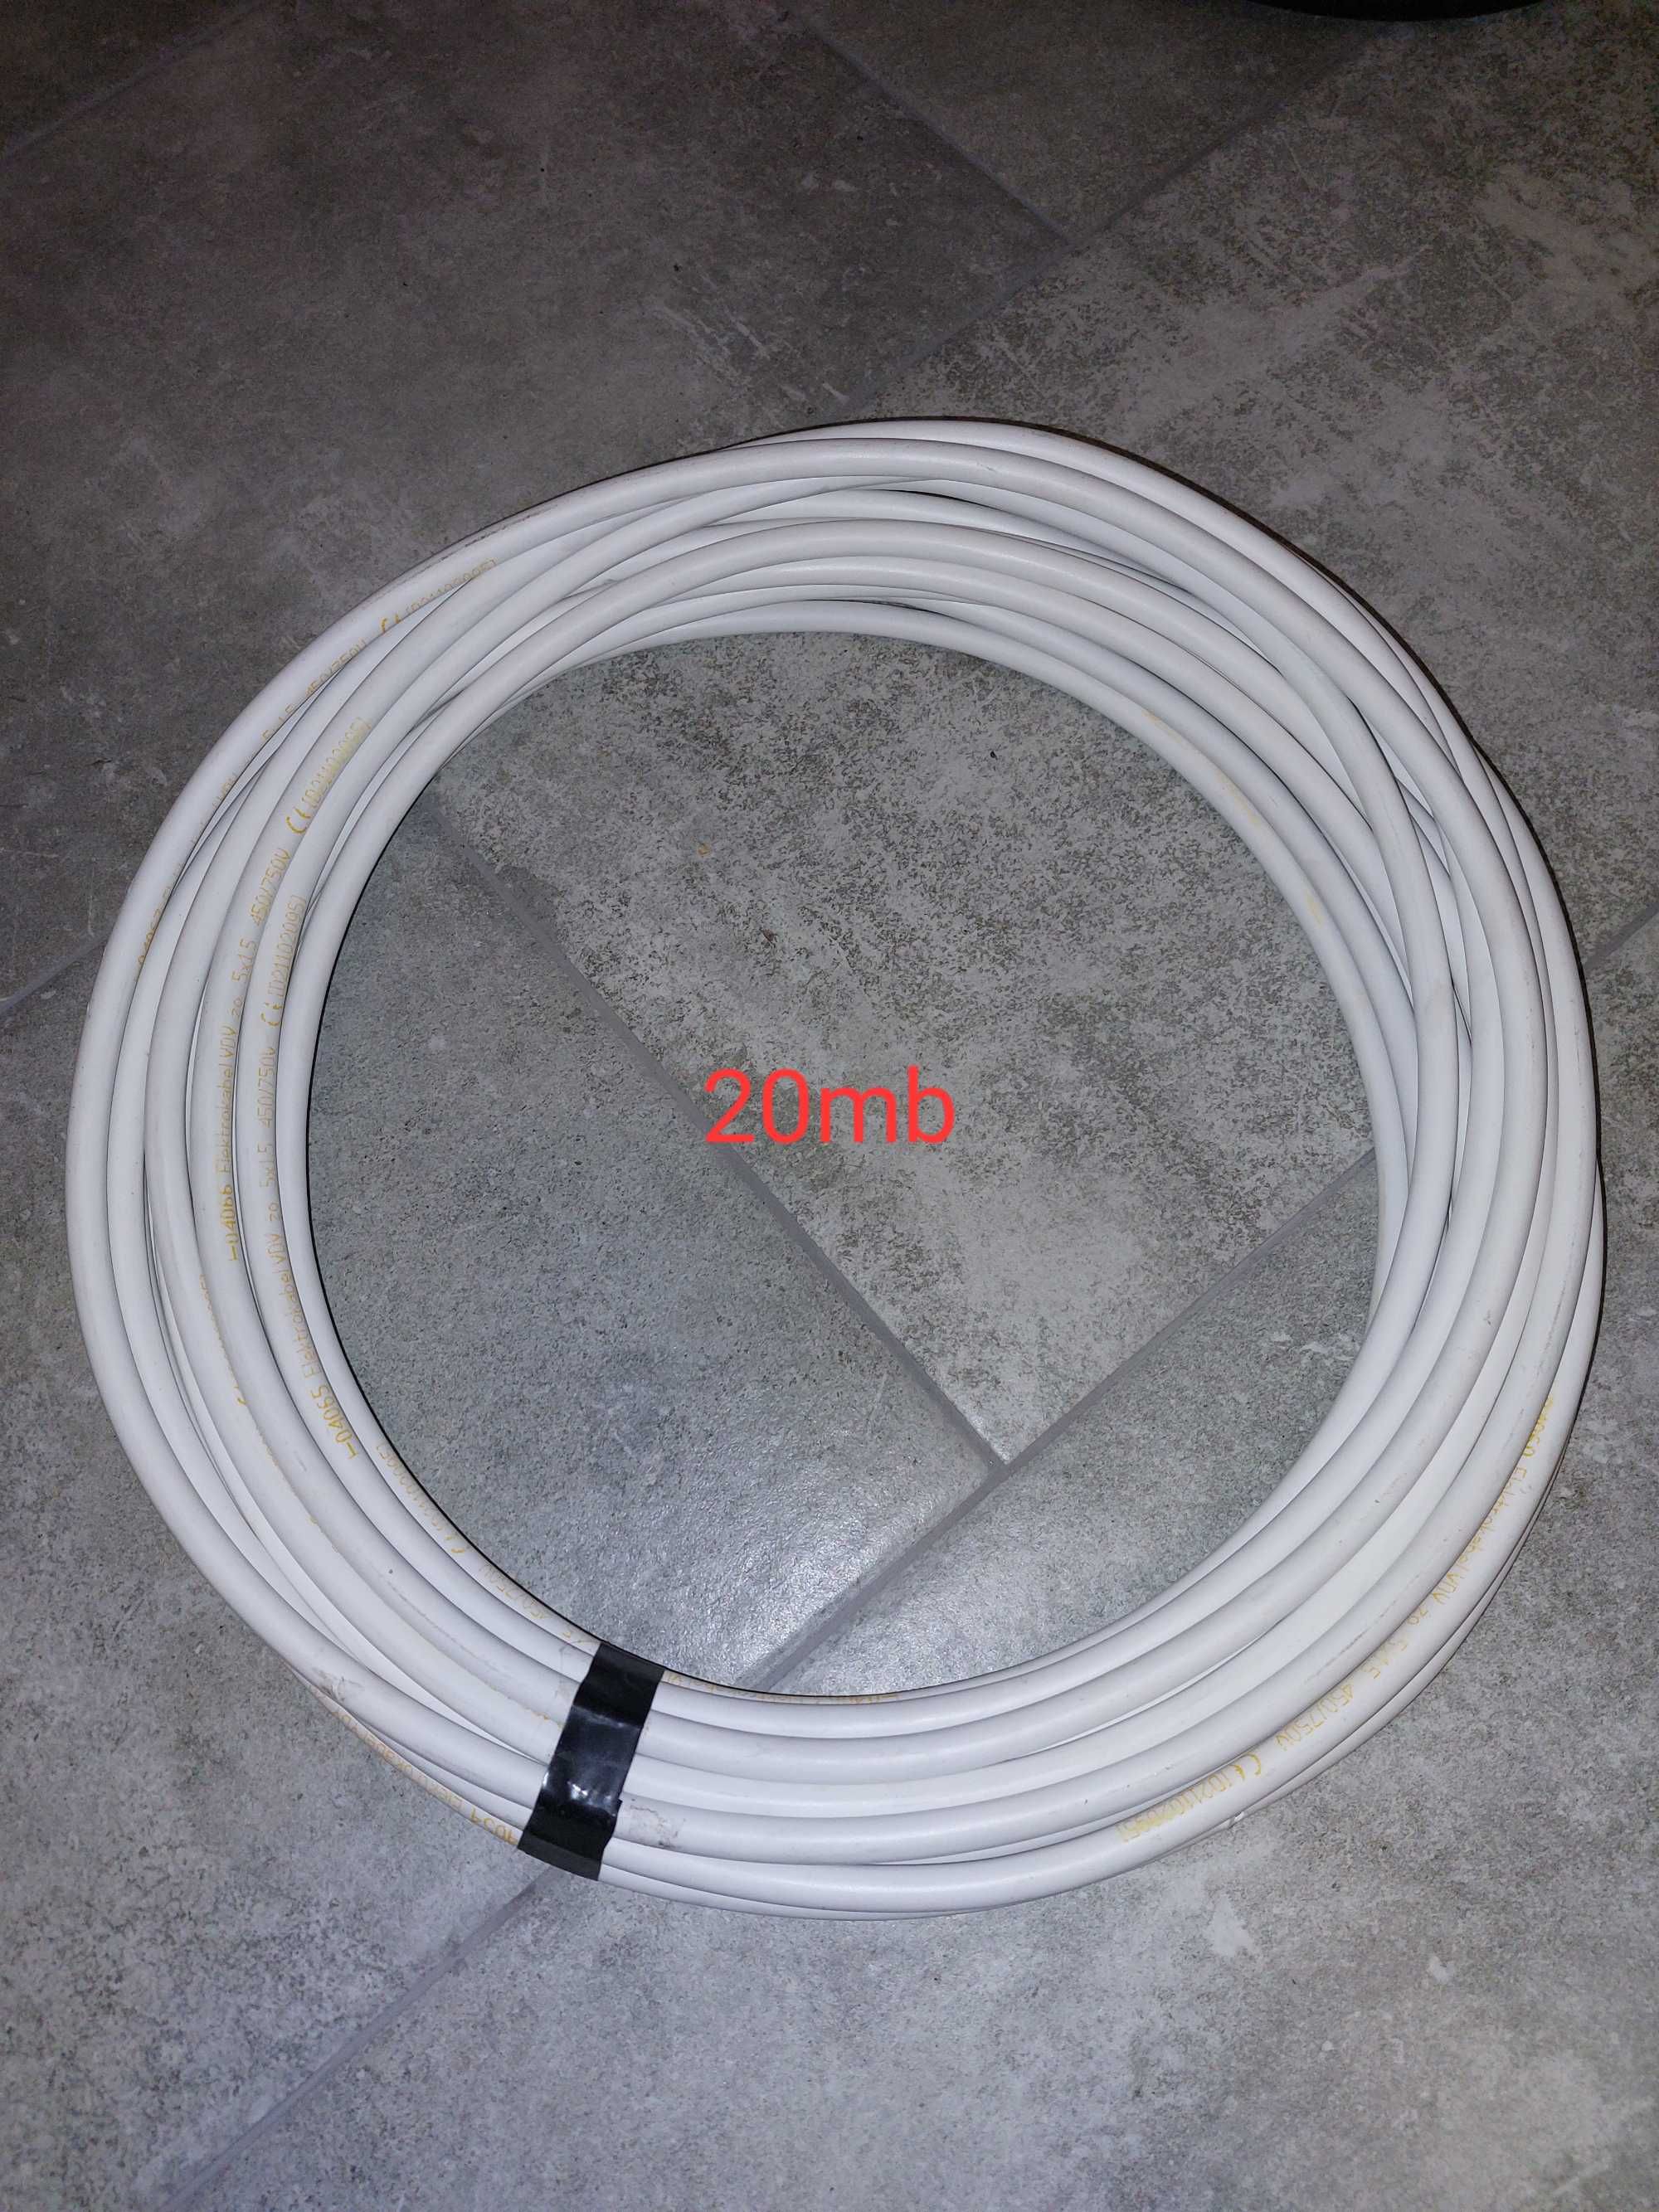 Sprzedam kabel elektrokabel ydy 5x1,5 mm2 20mb gratis wtyczka 5p 16a.